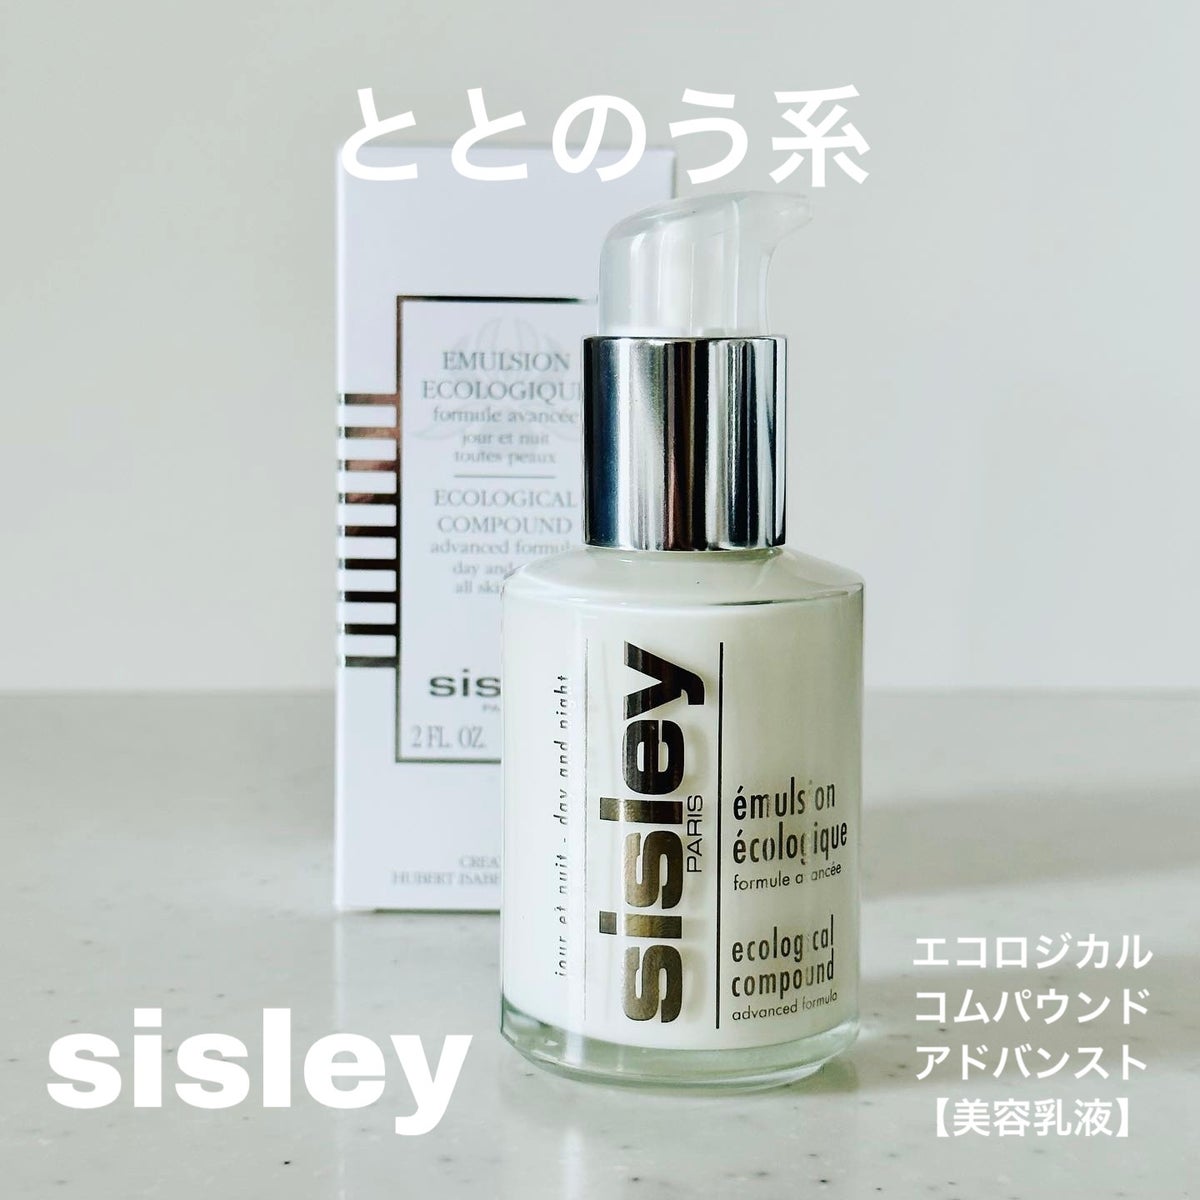 シスレー sisley エコロジカル コムパウンド アドバンスト - 乳液・ミルク